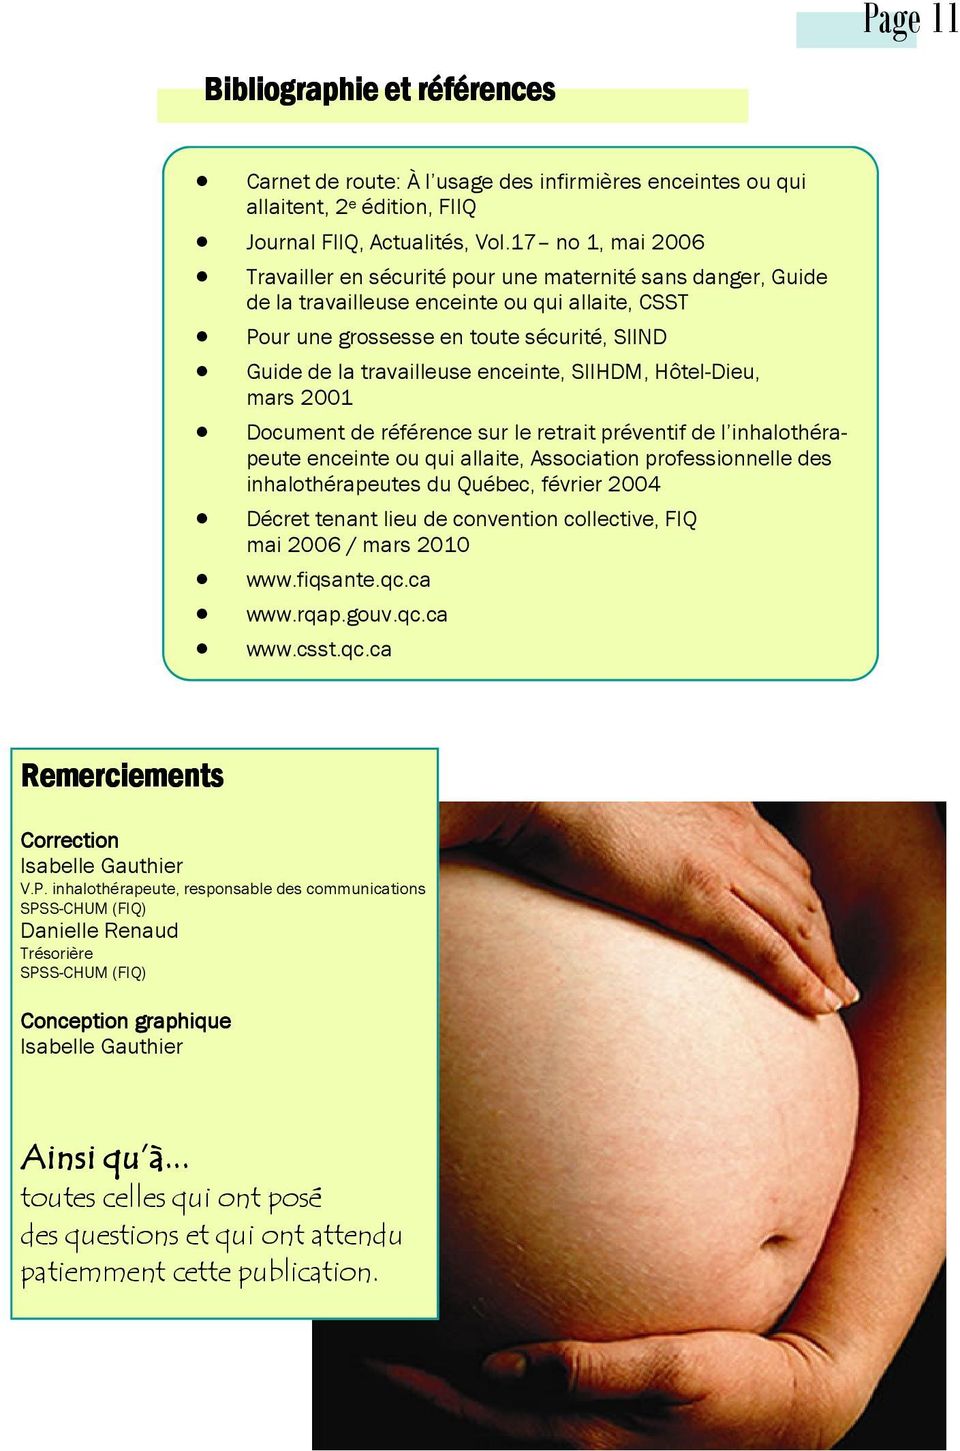 enceinte, SIIHDM, Hôtel-Dieu, mars 2001 Document de référence sur le retrait préventif de l inhalothérapeute enceinte ou qui allaite, Association professionnelle des inhalothérapeutes du Québec,